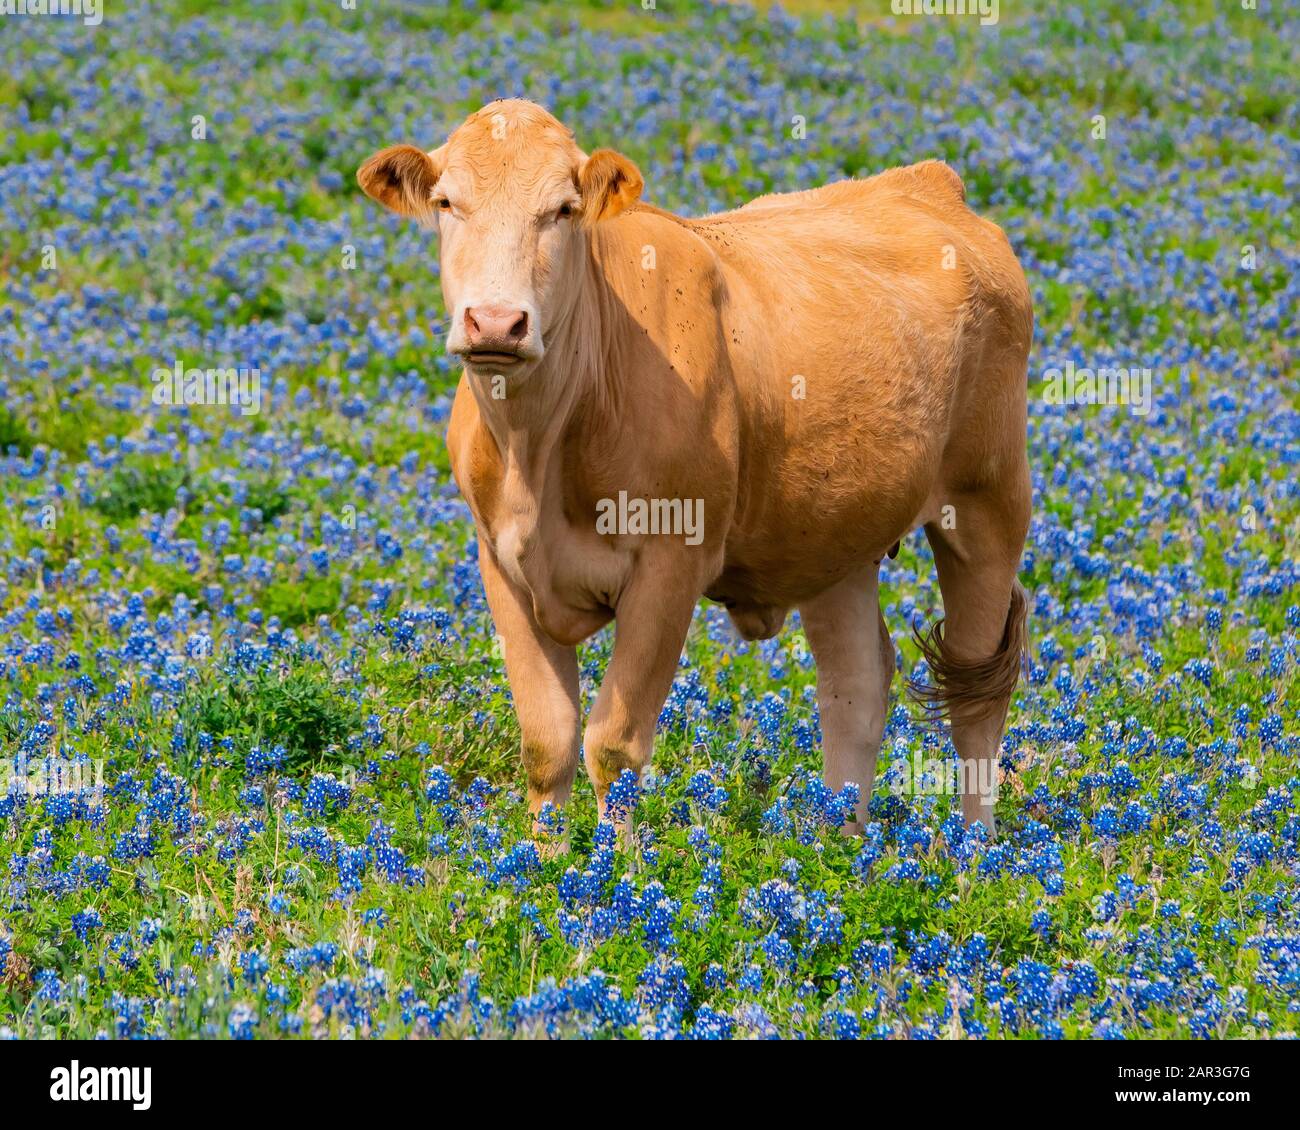 Kuh, die auf der mit bluebonnet gefüllten Weide steht Stockfoto